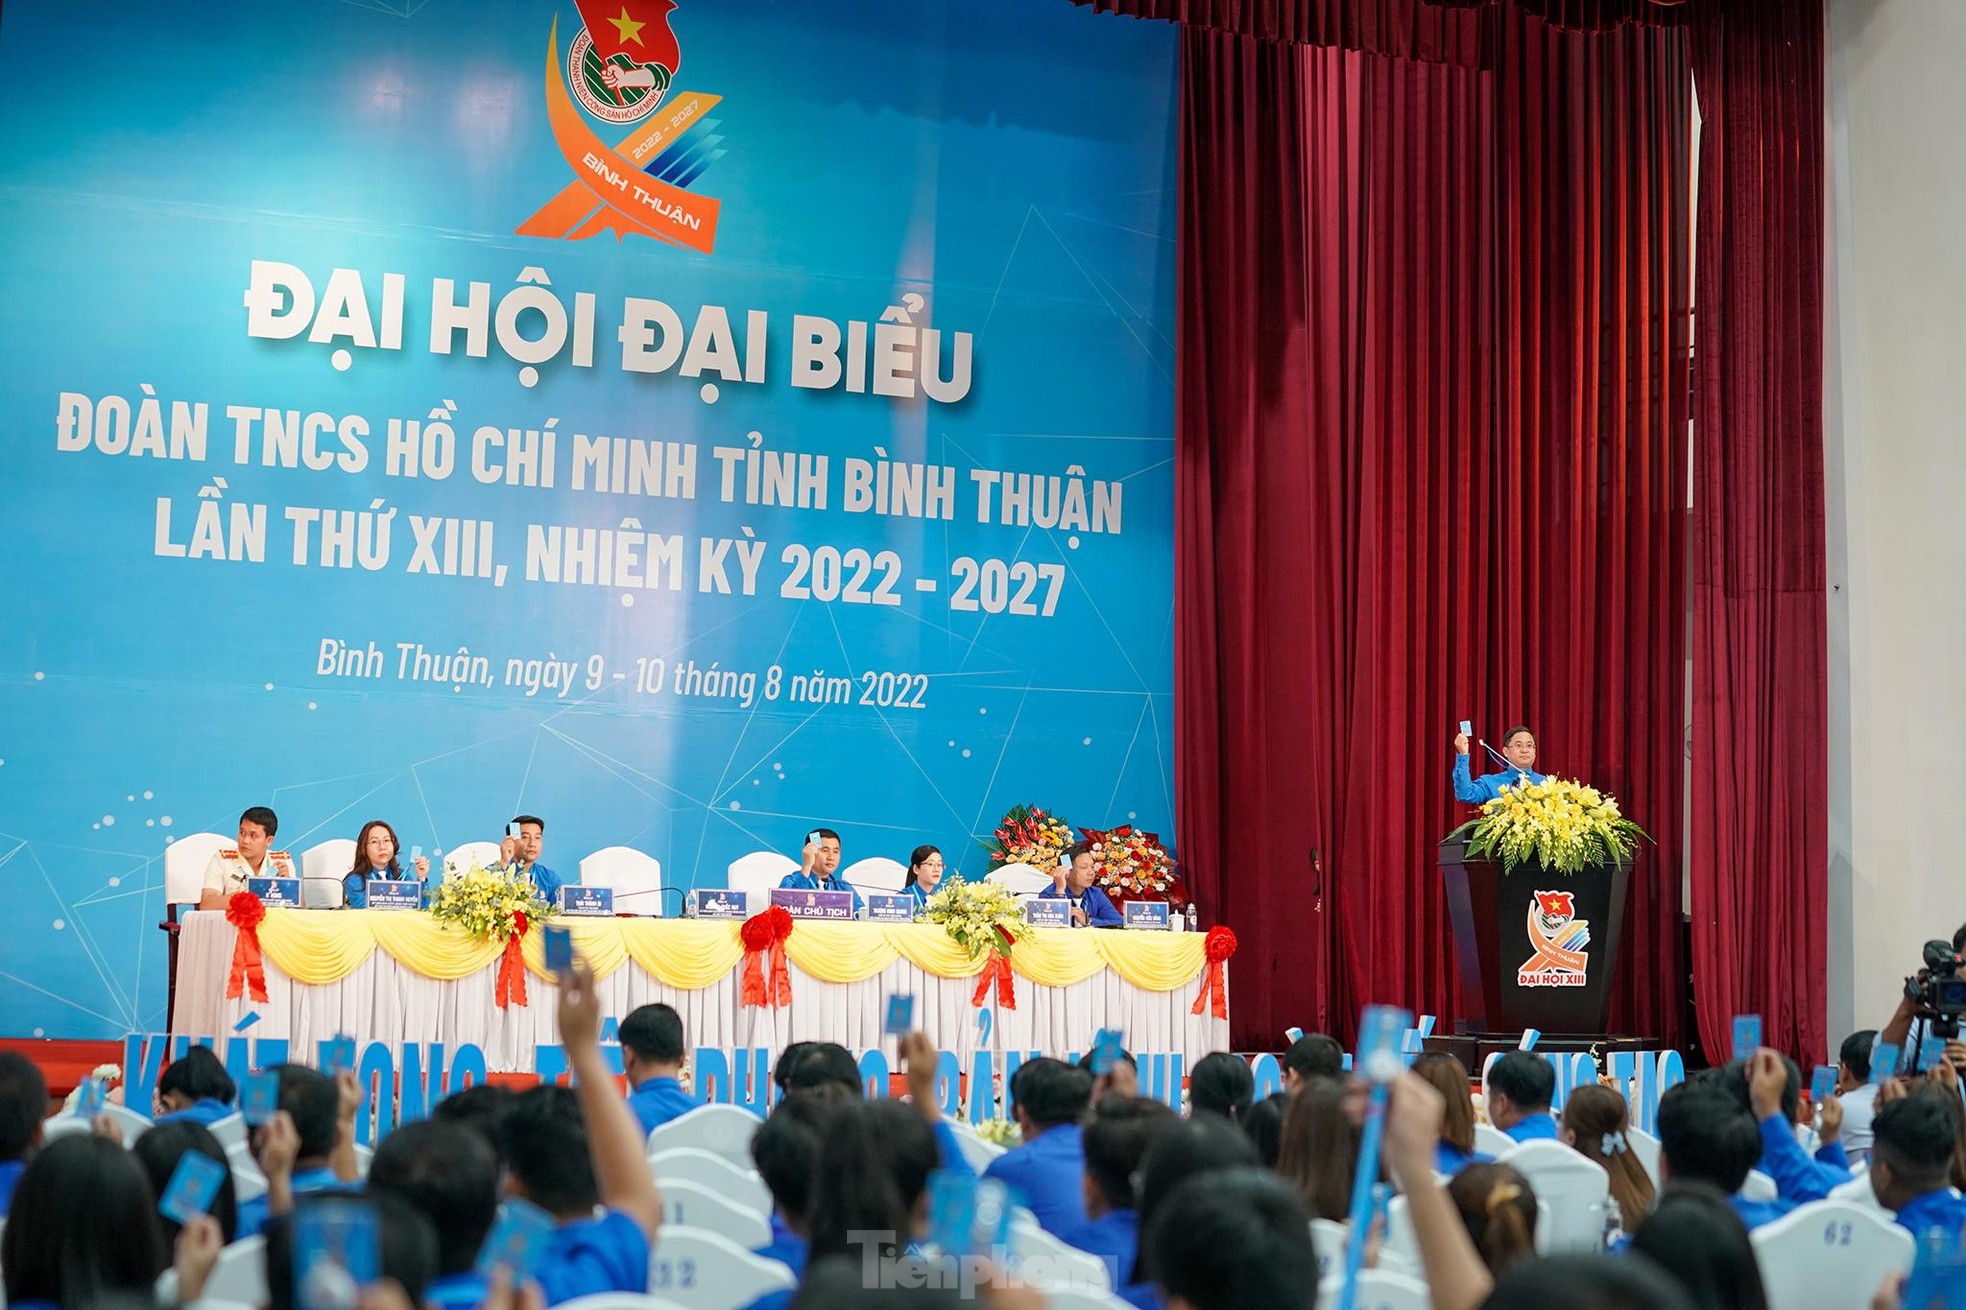 Toàn cảnh Đại hội Đoàn Thanh niên Cộng sản Hồ Chí Minh tỉnh Bình Thuận ảnh 22